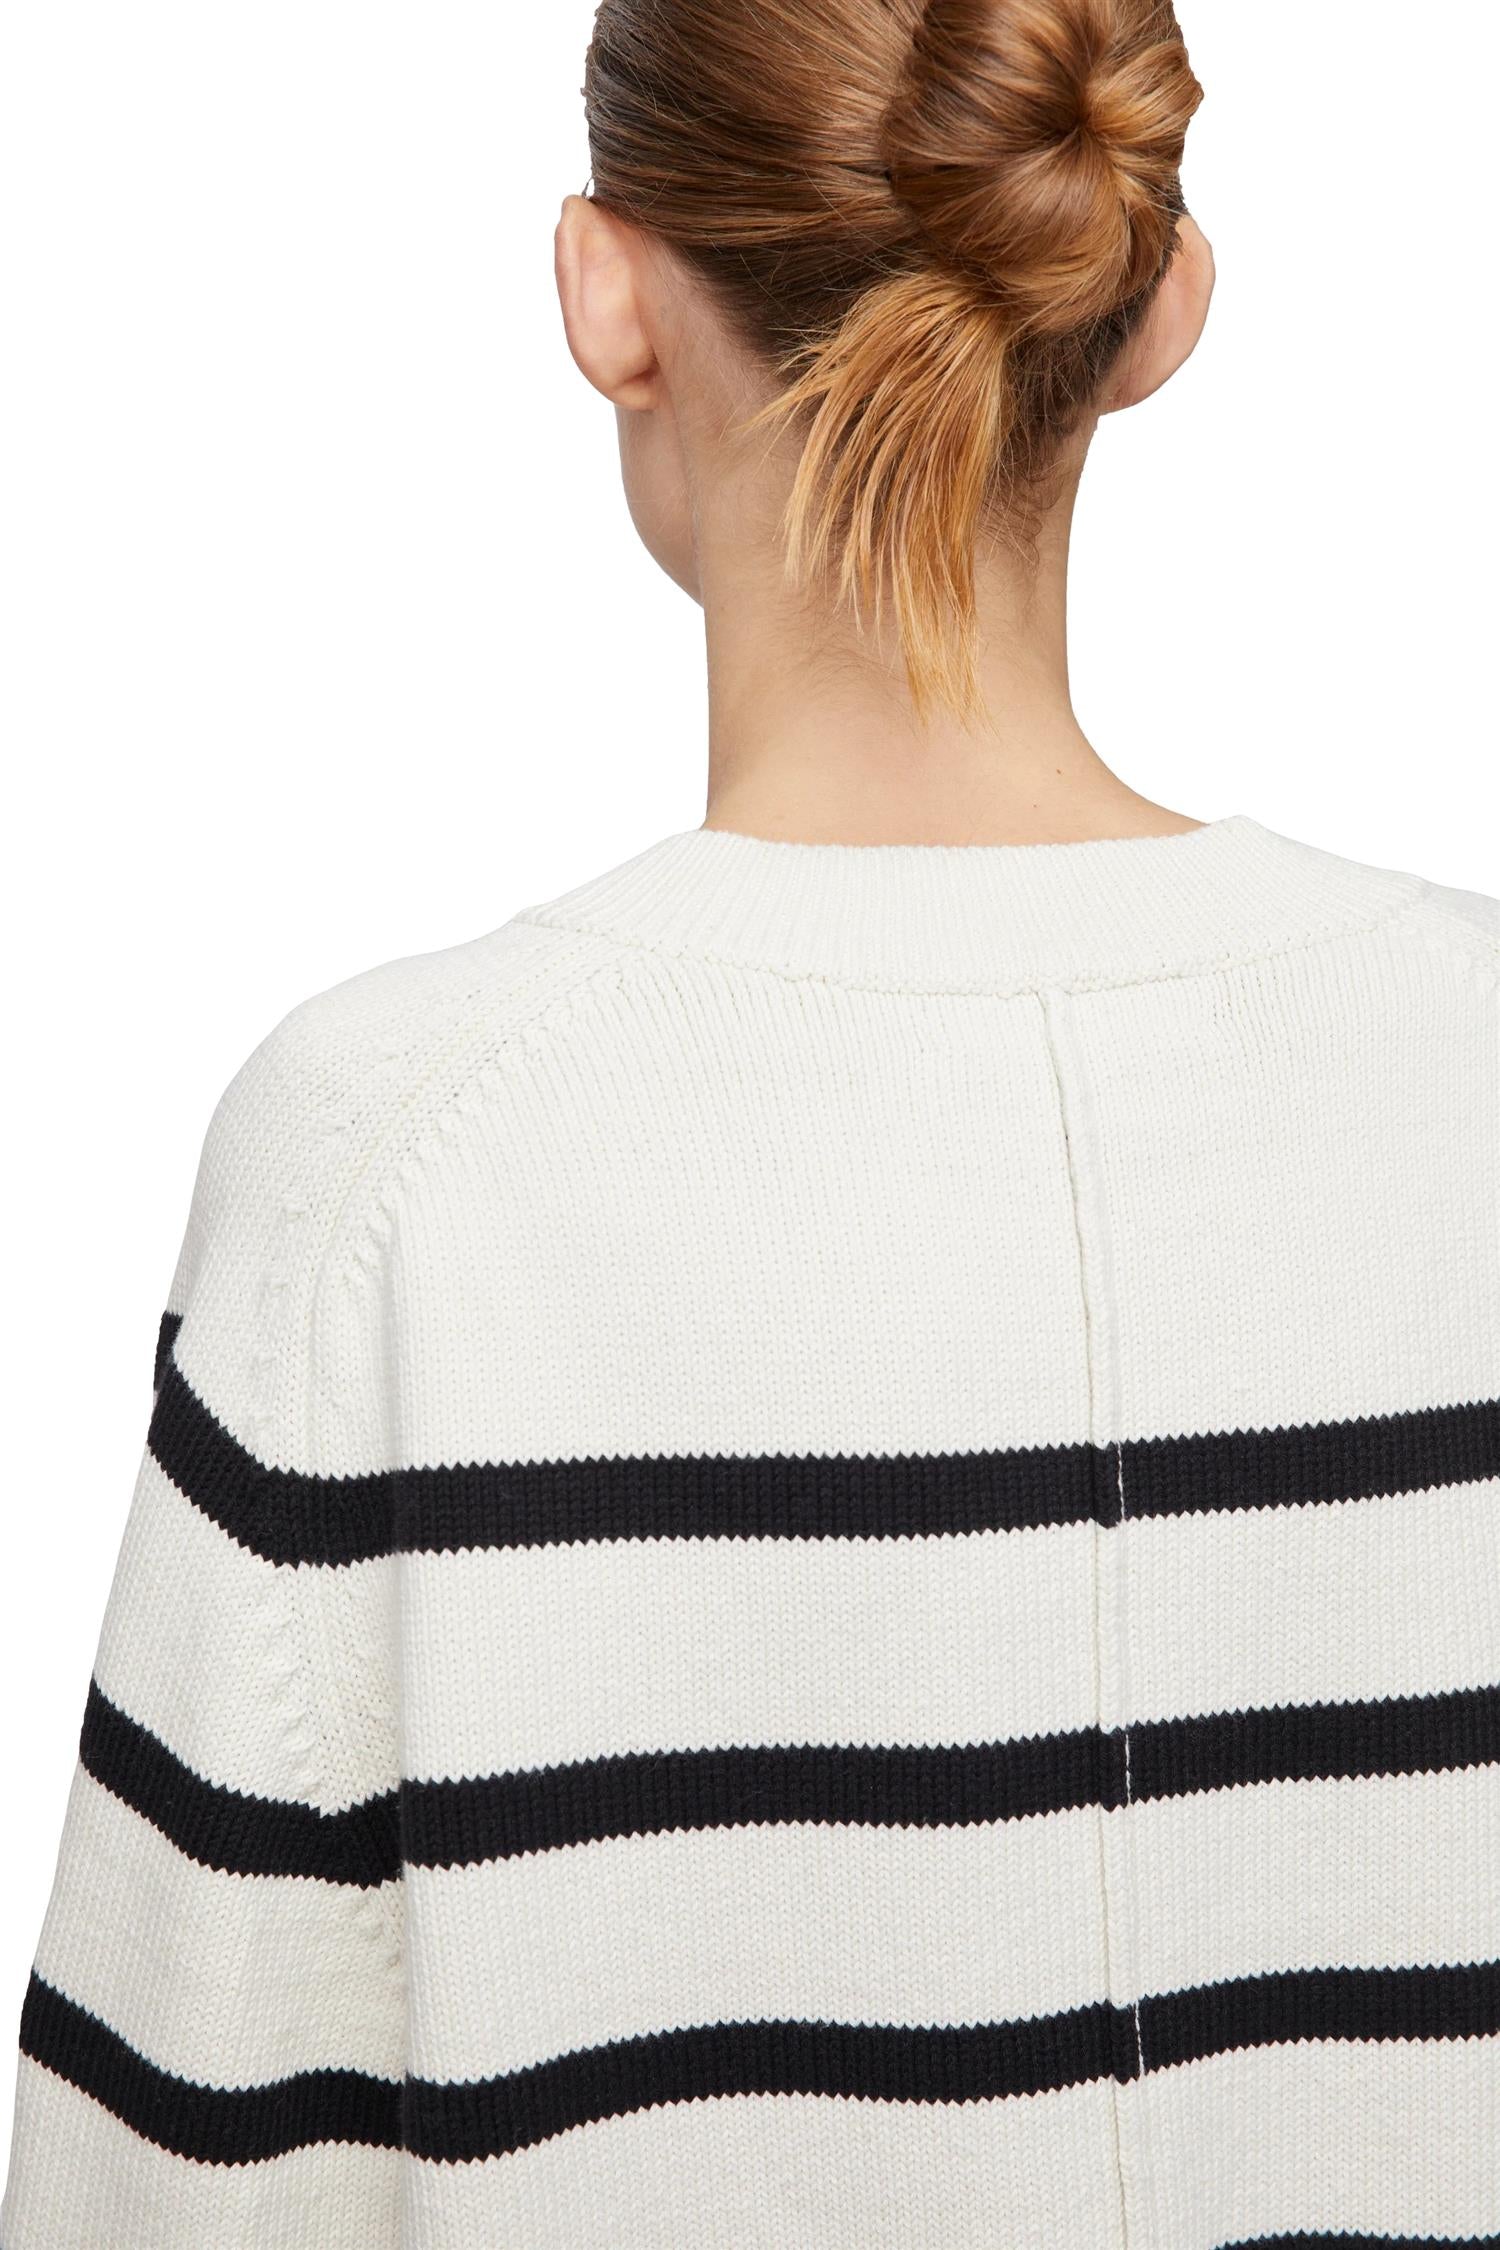 FWSS Bayside V-Neck Sweater Genser- Stripet - [shop.name]